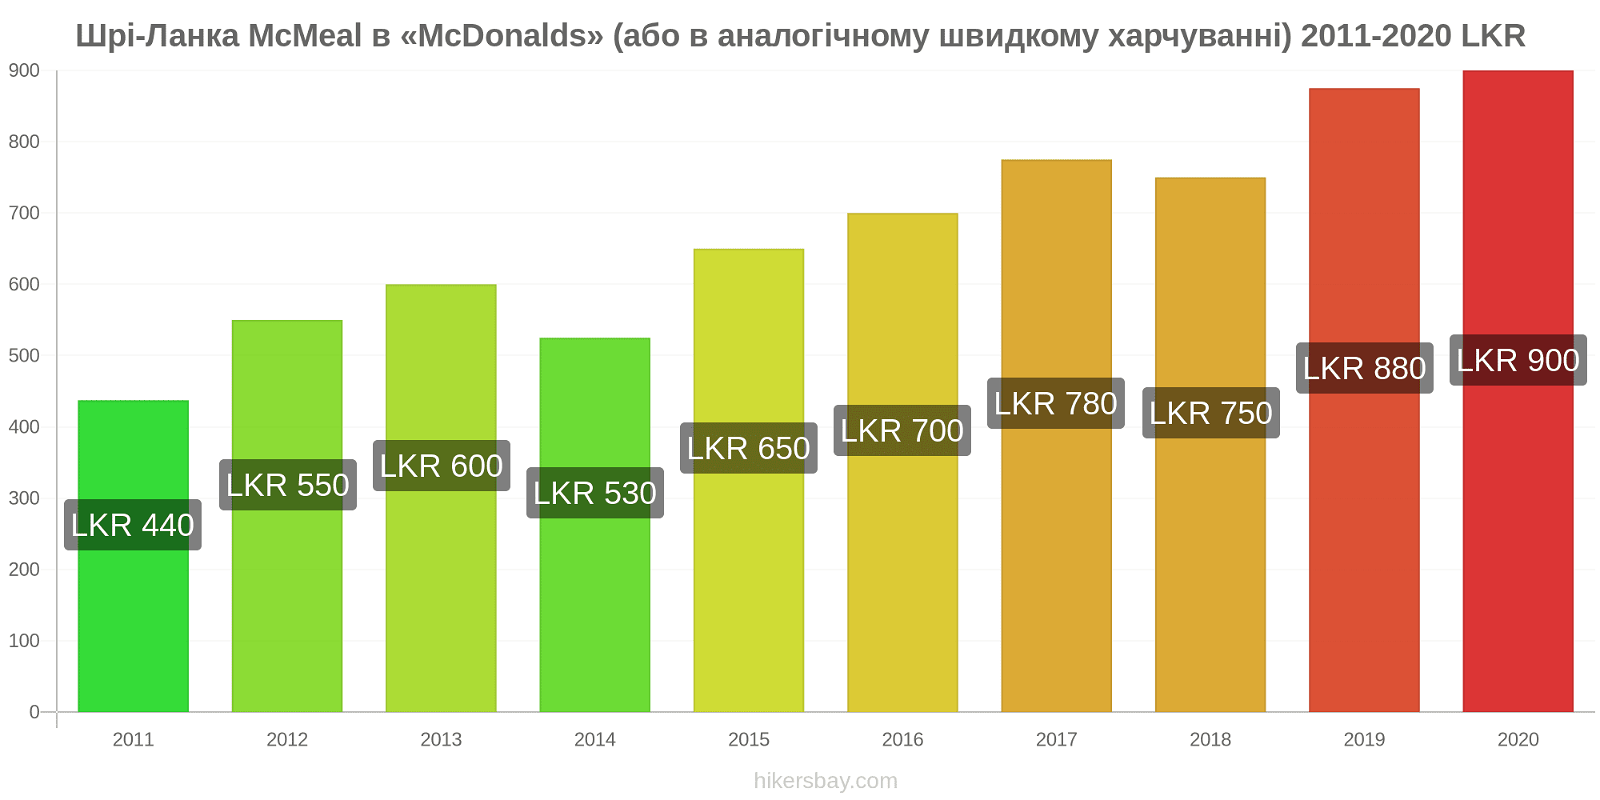 Шрі-Ланка зміни цін McMeal в «McDonalds» (або в аналогічному швидкому харчуванні) hikersbay.com